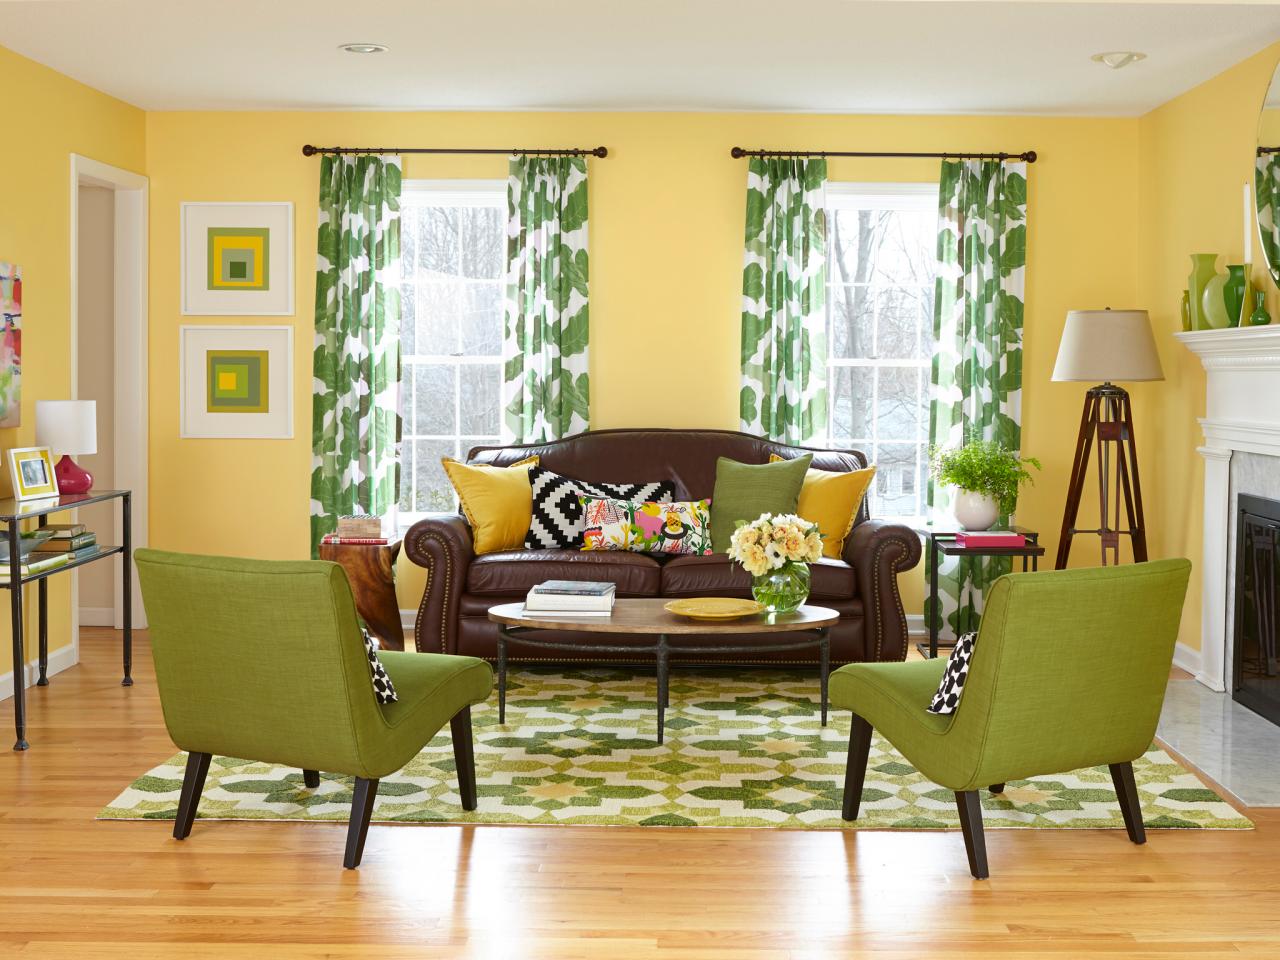 غرفة المعيشة في الصورة الخضراء التصميم